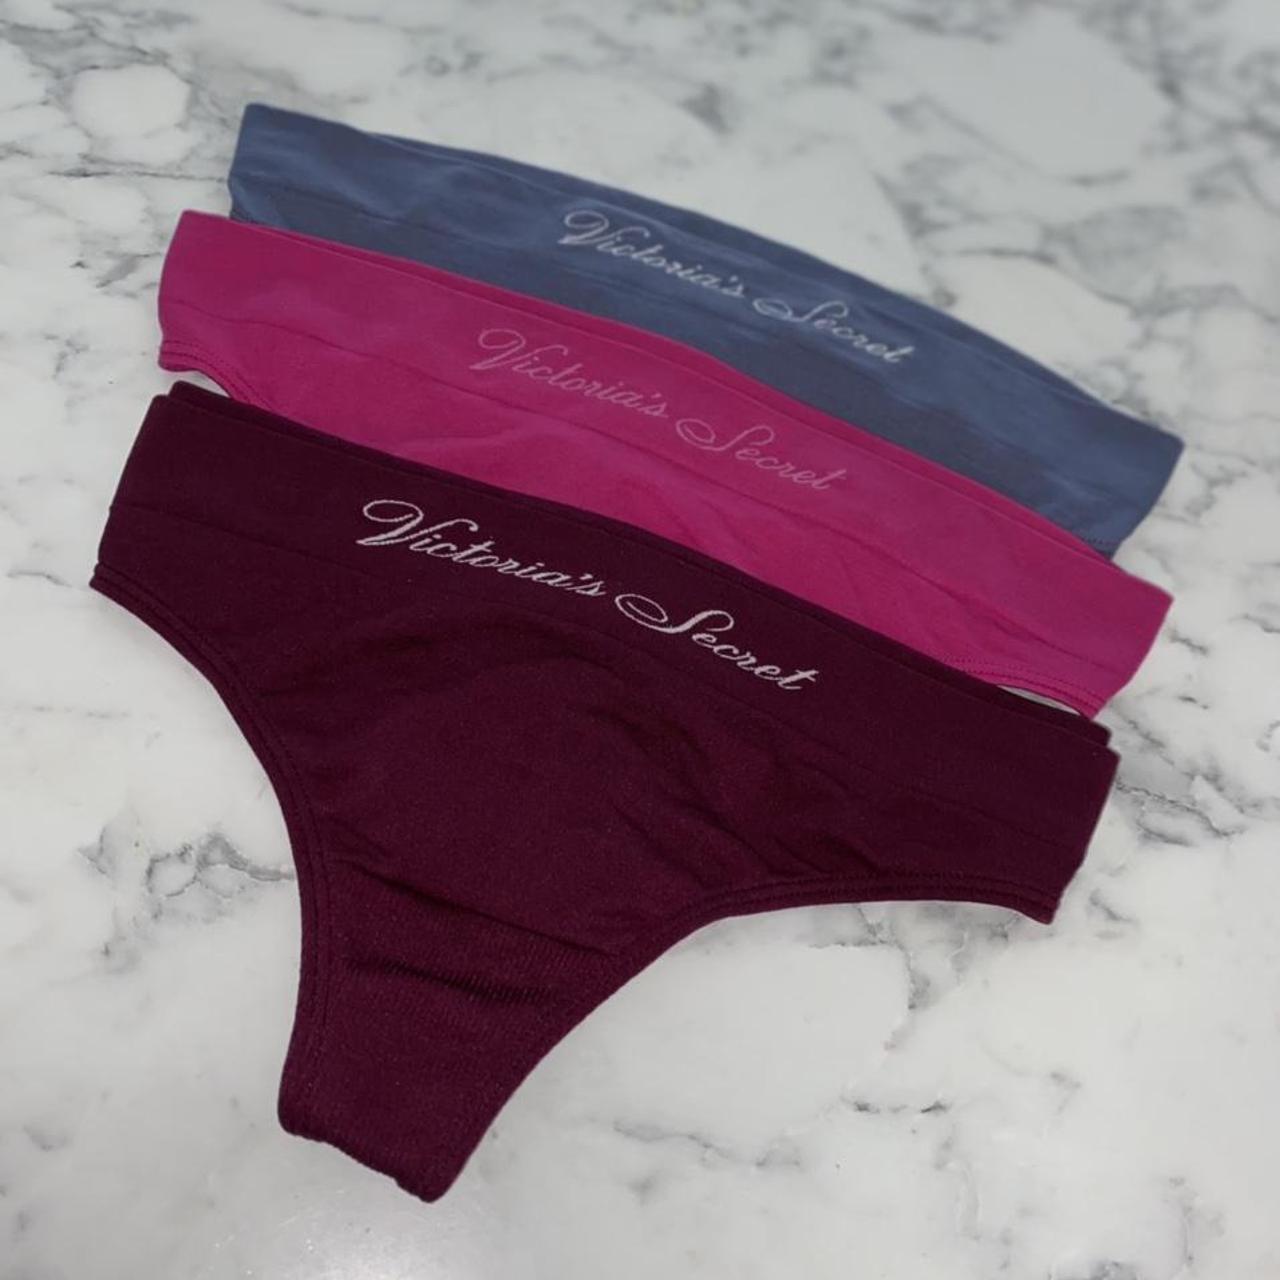 3 Ladies authentic Victoria's secret thongs Size - Depop